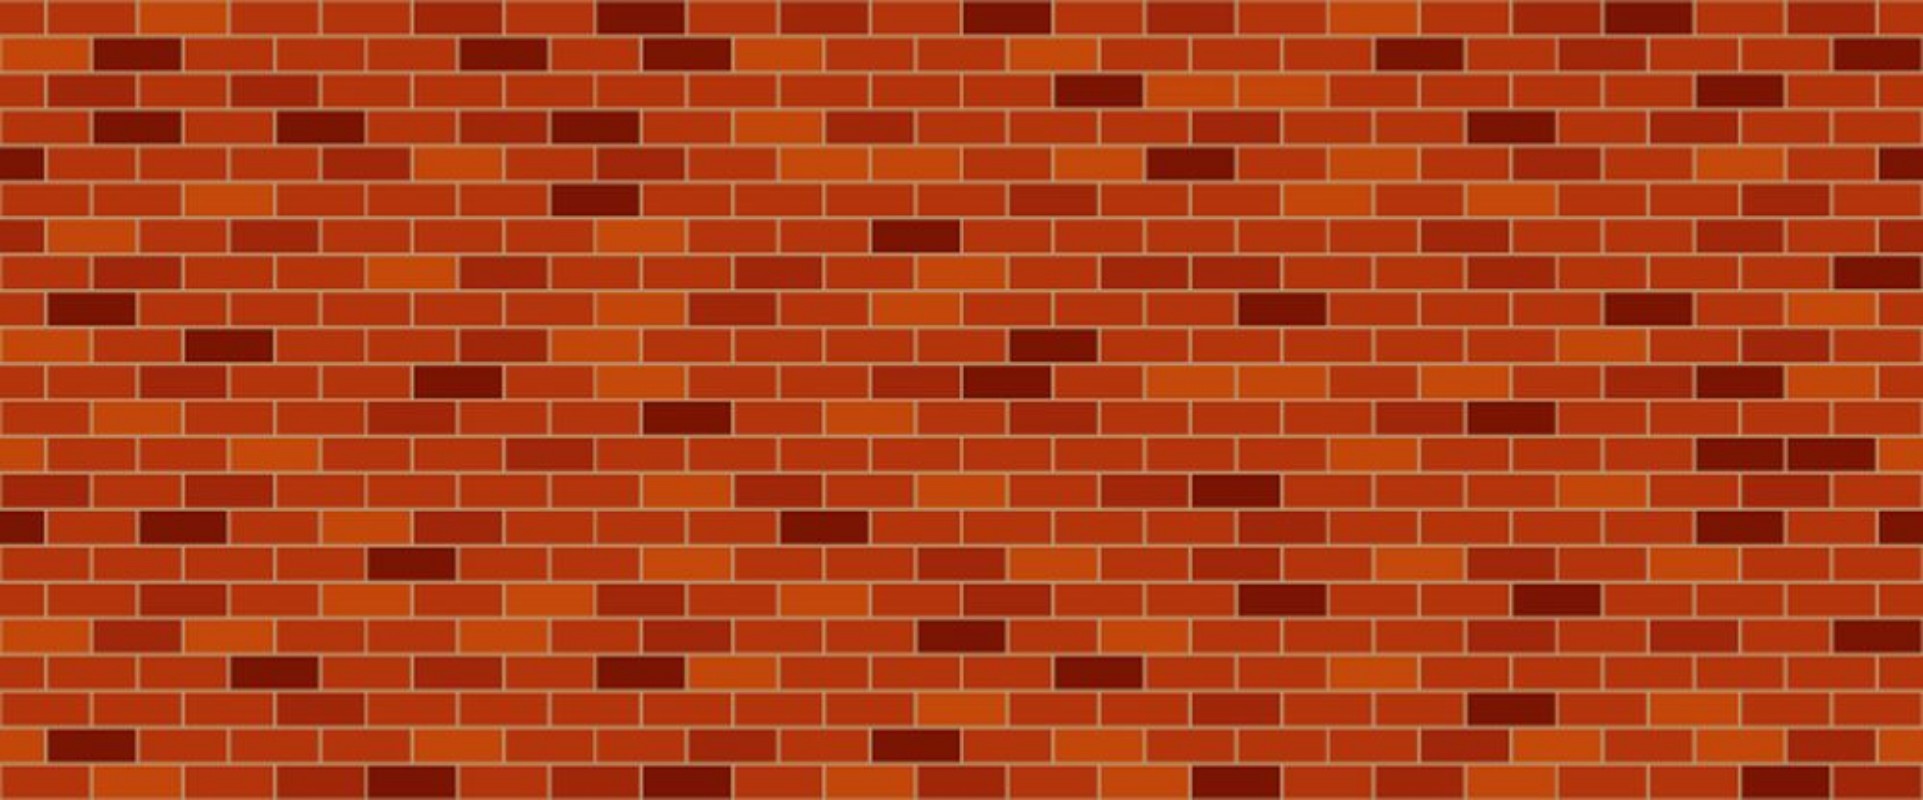 Image de Red brick wall 